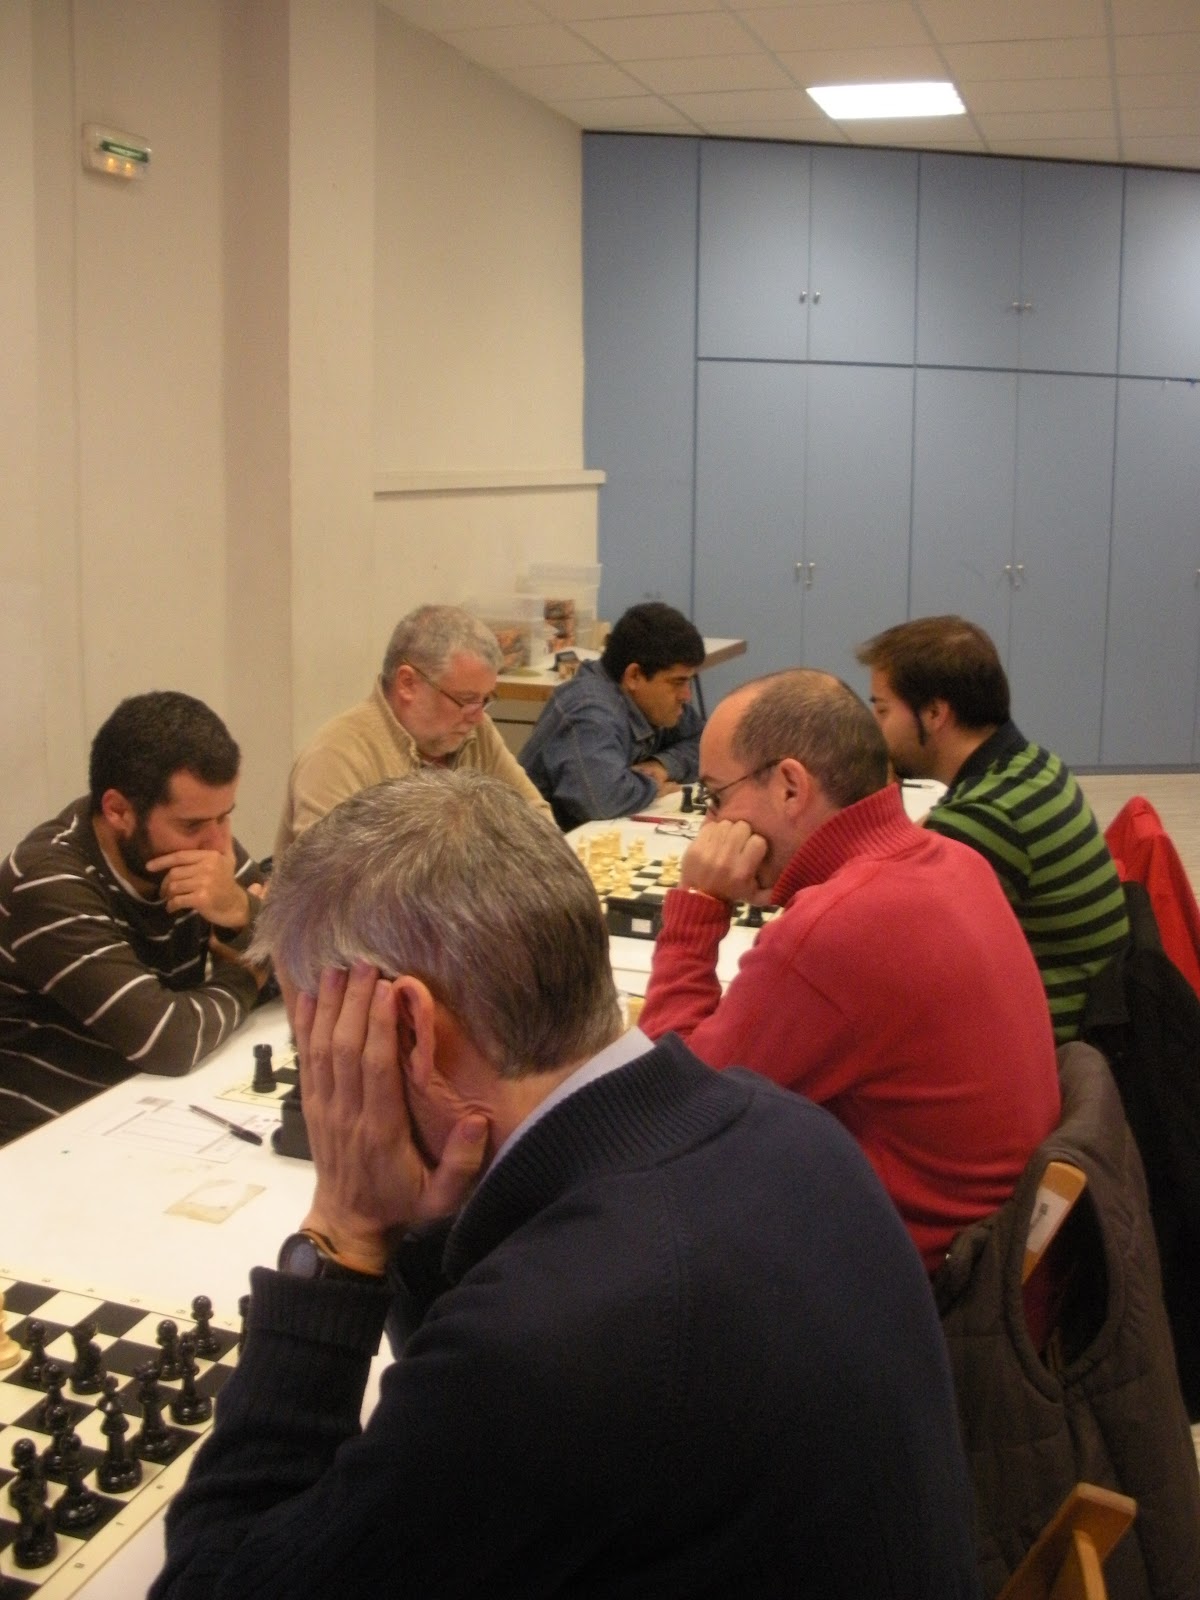 Visita relámpago de Carlsen: reunión con la FIDE, cena en una